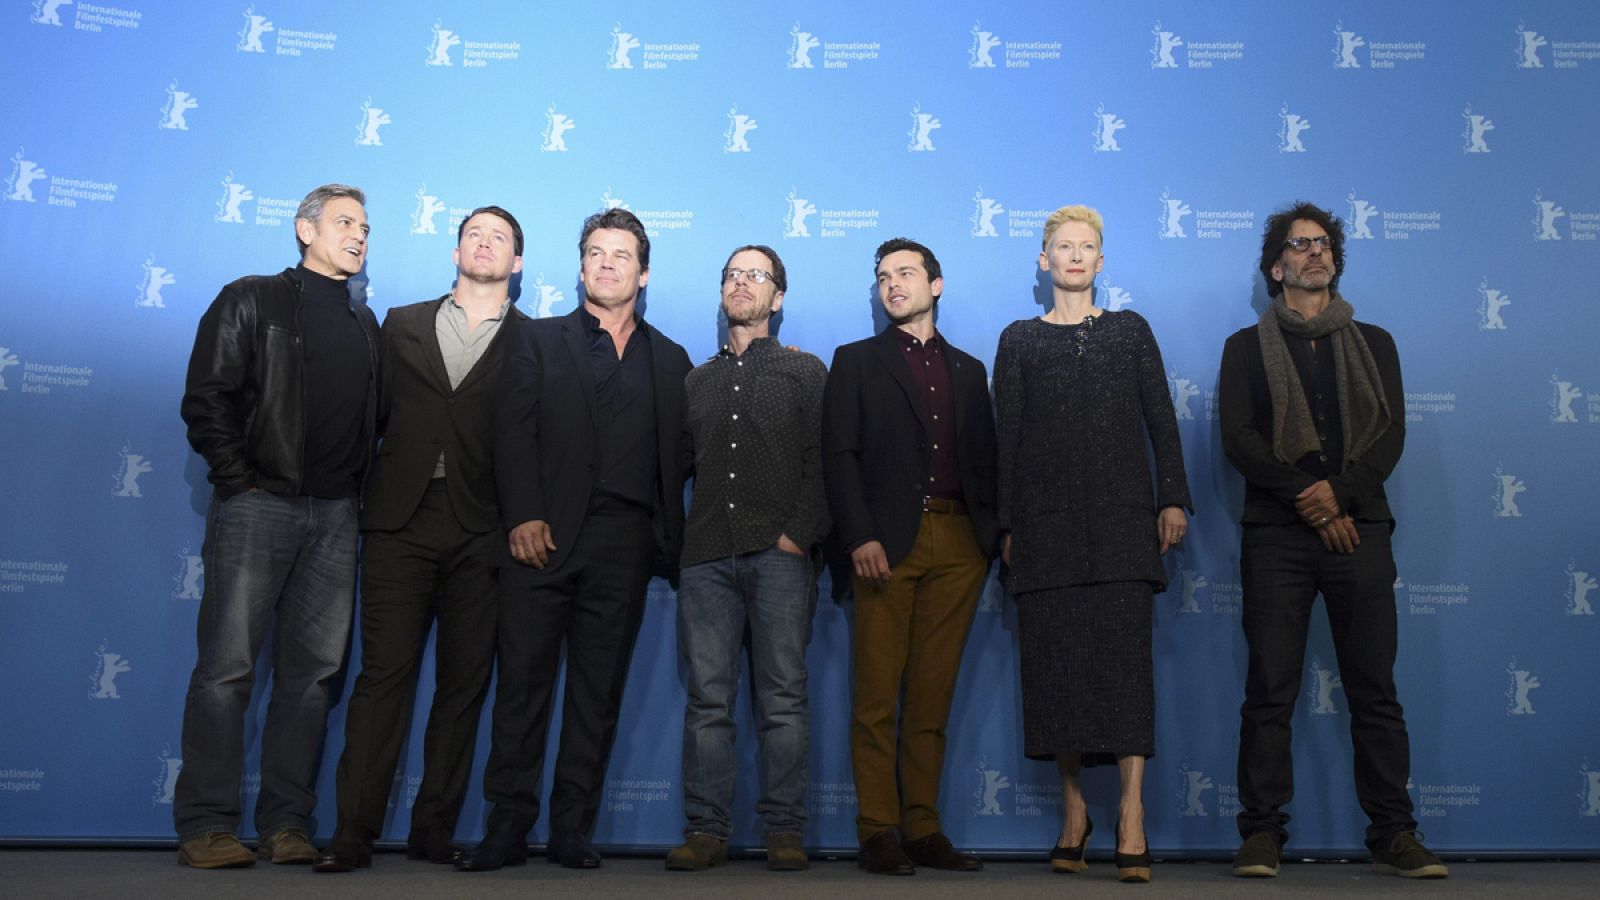 ng Tatum, Josh Brolin, director Ethan Coen, actors Alden Ehrenreich, Tilda Swinton y Joel Coen (L-R) en el photocall